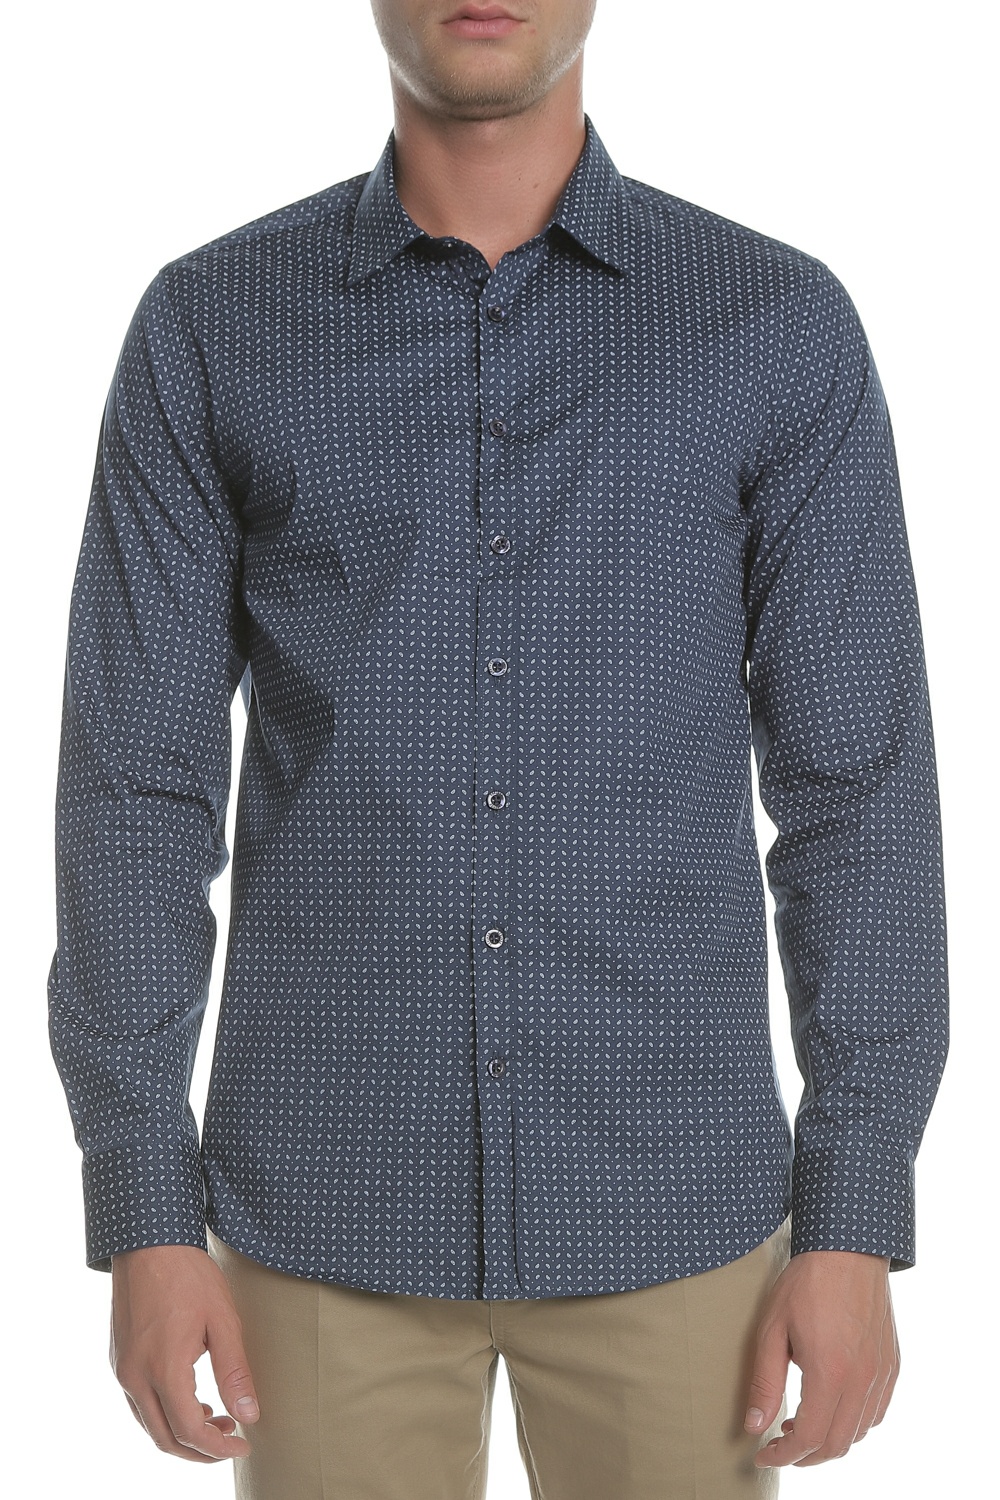 Ανδρικά/Ρούχα/Πουκάμισα/Μακρυμάνικα SSEINSE - Ανδρικό πουκάμισο SSEINSE μπλε